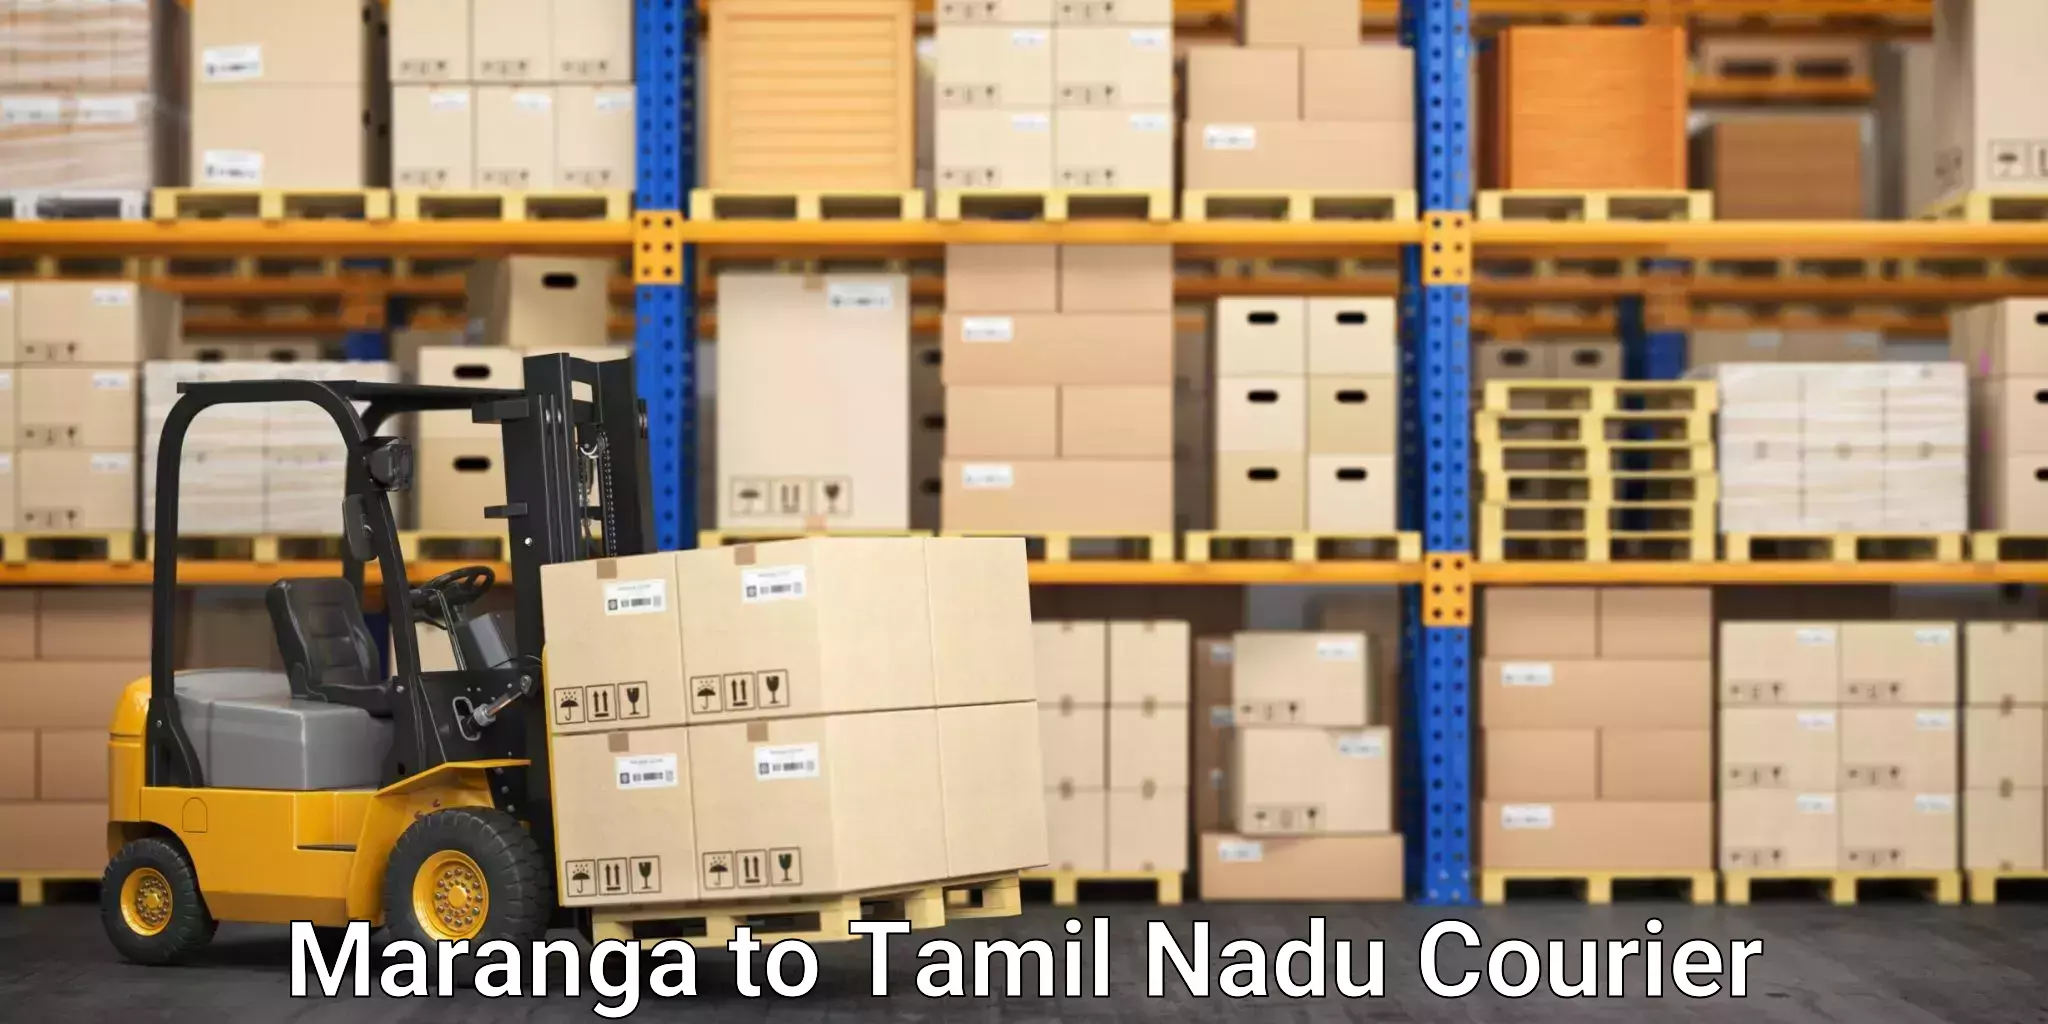 Furniture movers and packers Maranga to Chennai